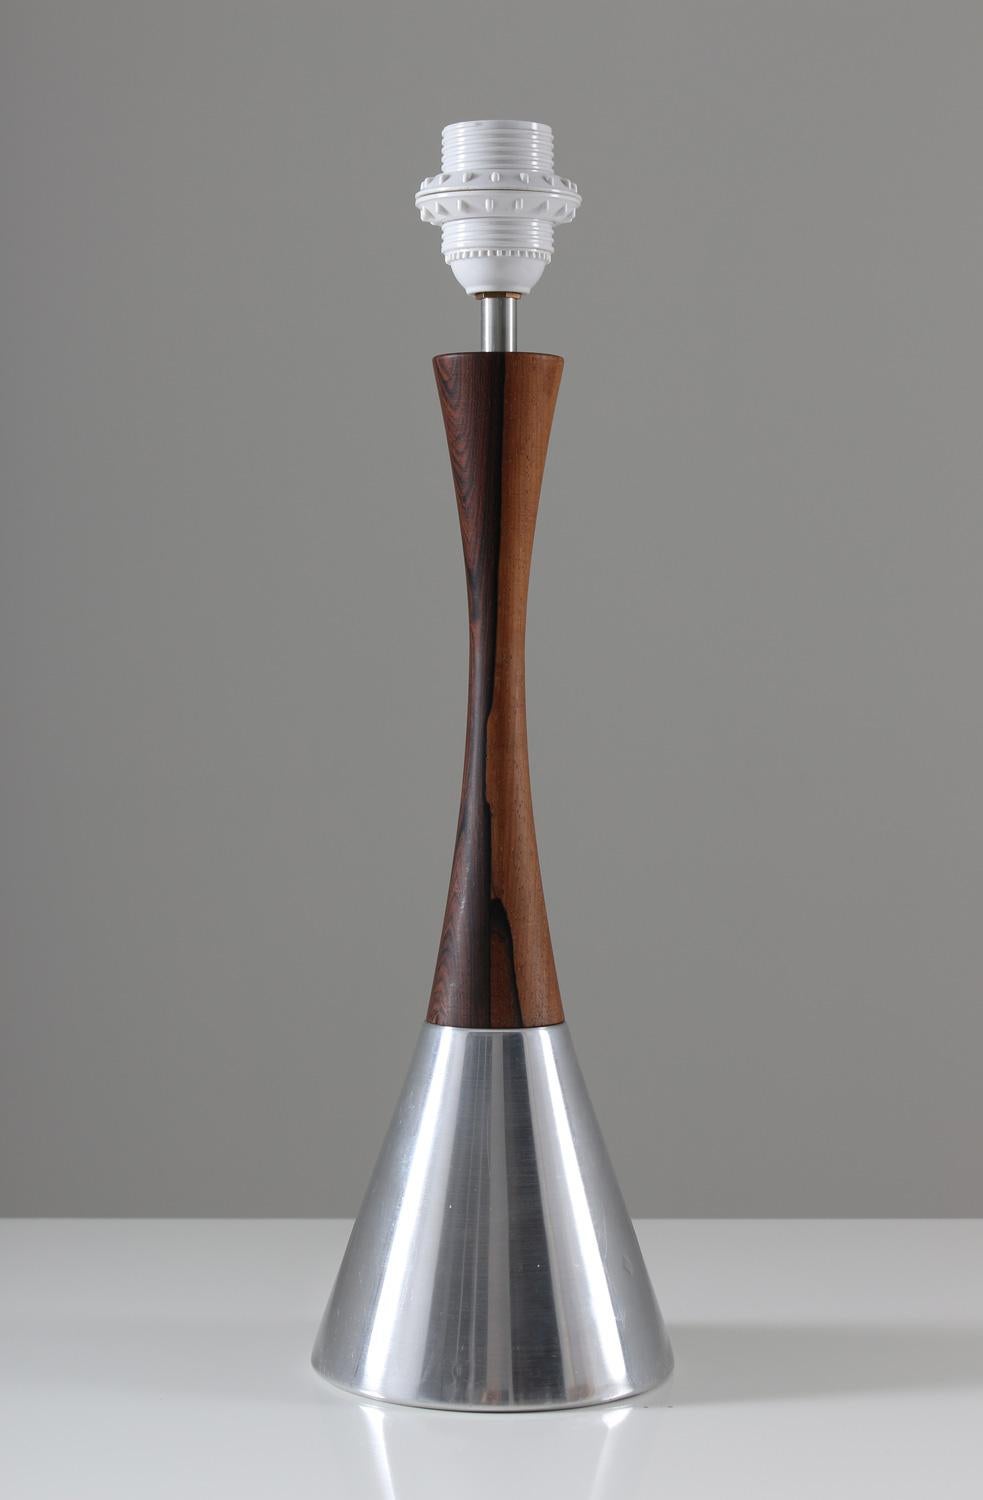 Satz von zwei seltenen Tischlampen von Bergboms, Schweden, 1960er Jahre. Die Lampen sind aus Palisanderholz und gebürstetem Metall gefertigt. Das Design ist einfach und elegant mit der schlanken Taille und dem schönen Kontrast zwischen Holz und